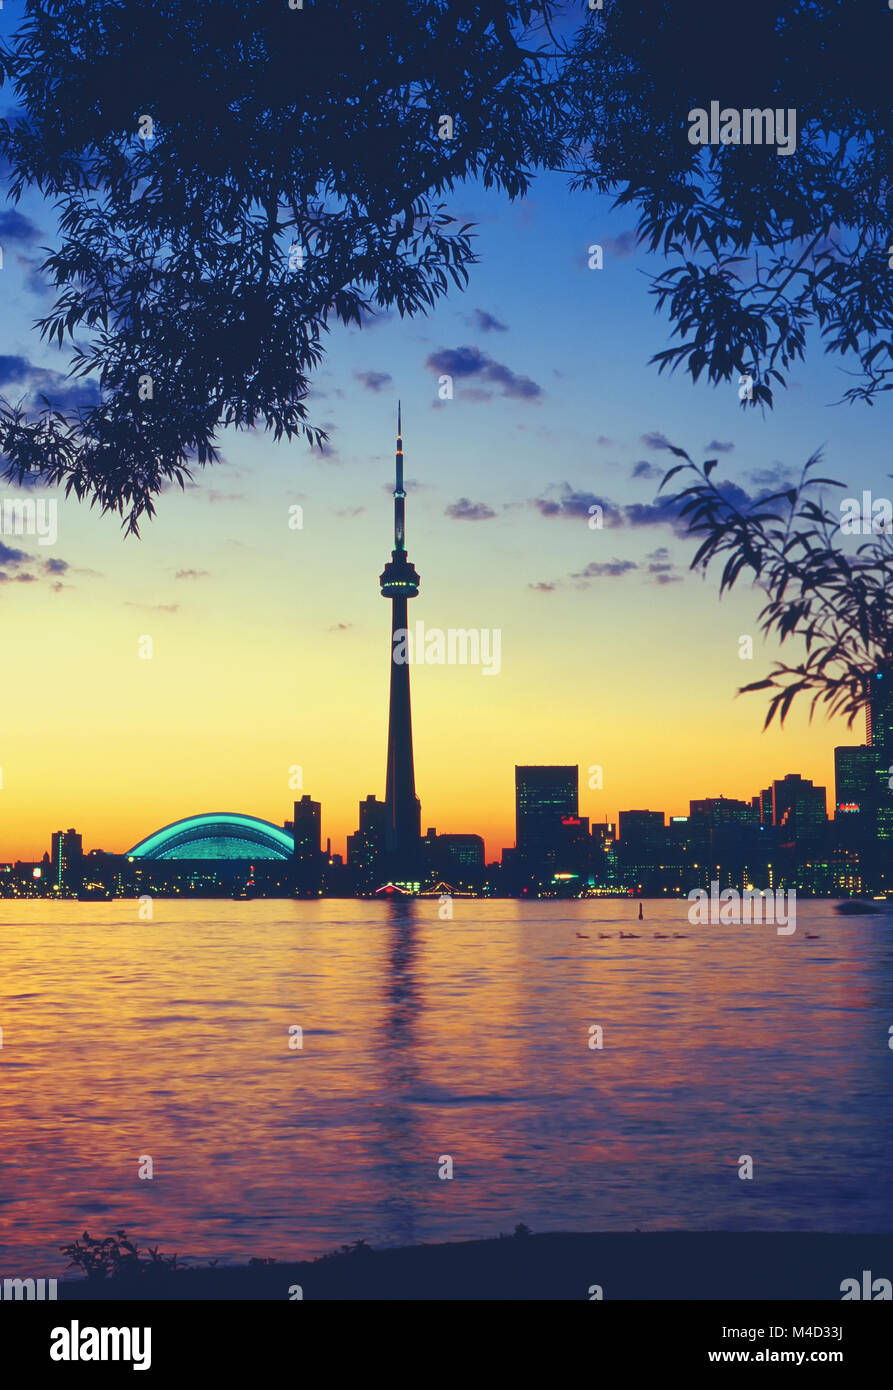 1995 Toronto Ontario Canada, Vue de l'île de Toronto au coucher du soleil Banque D'Images